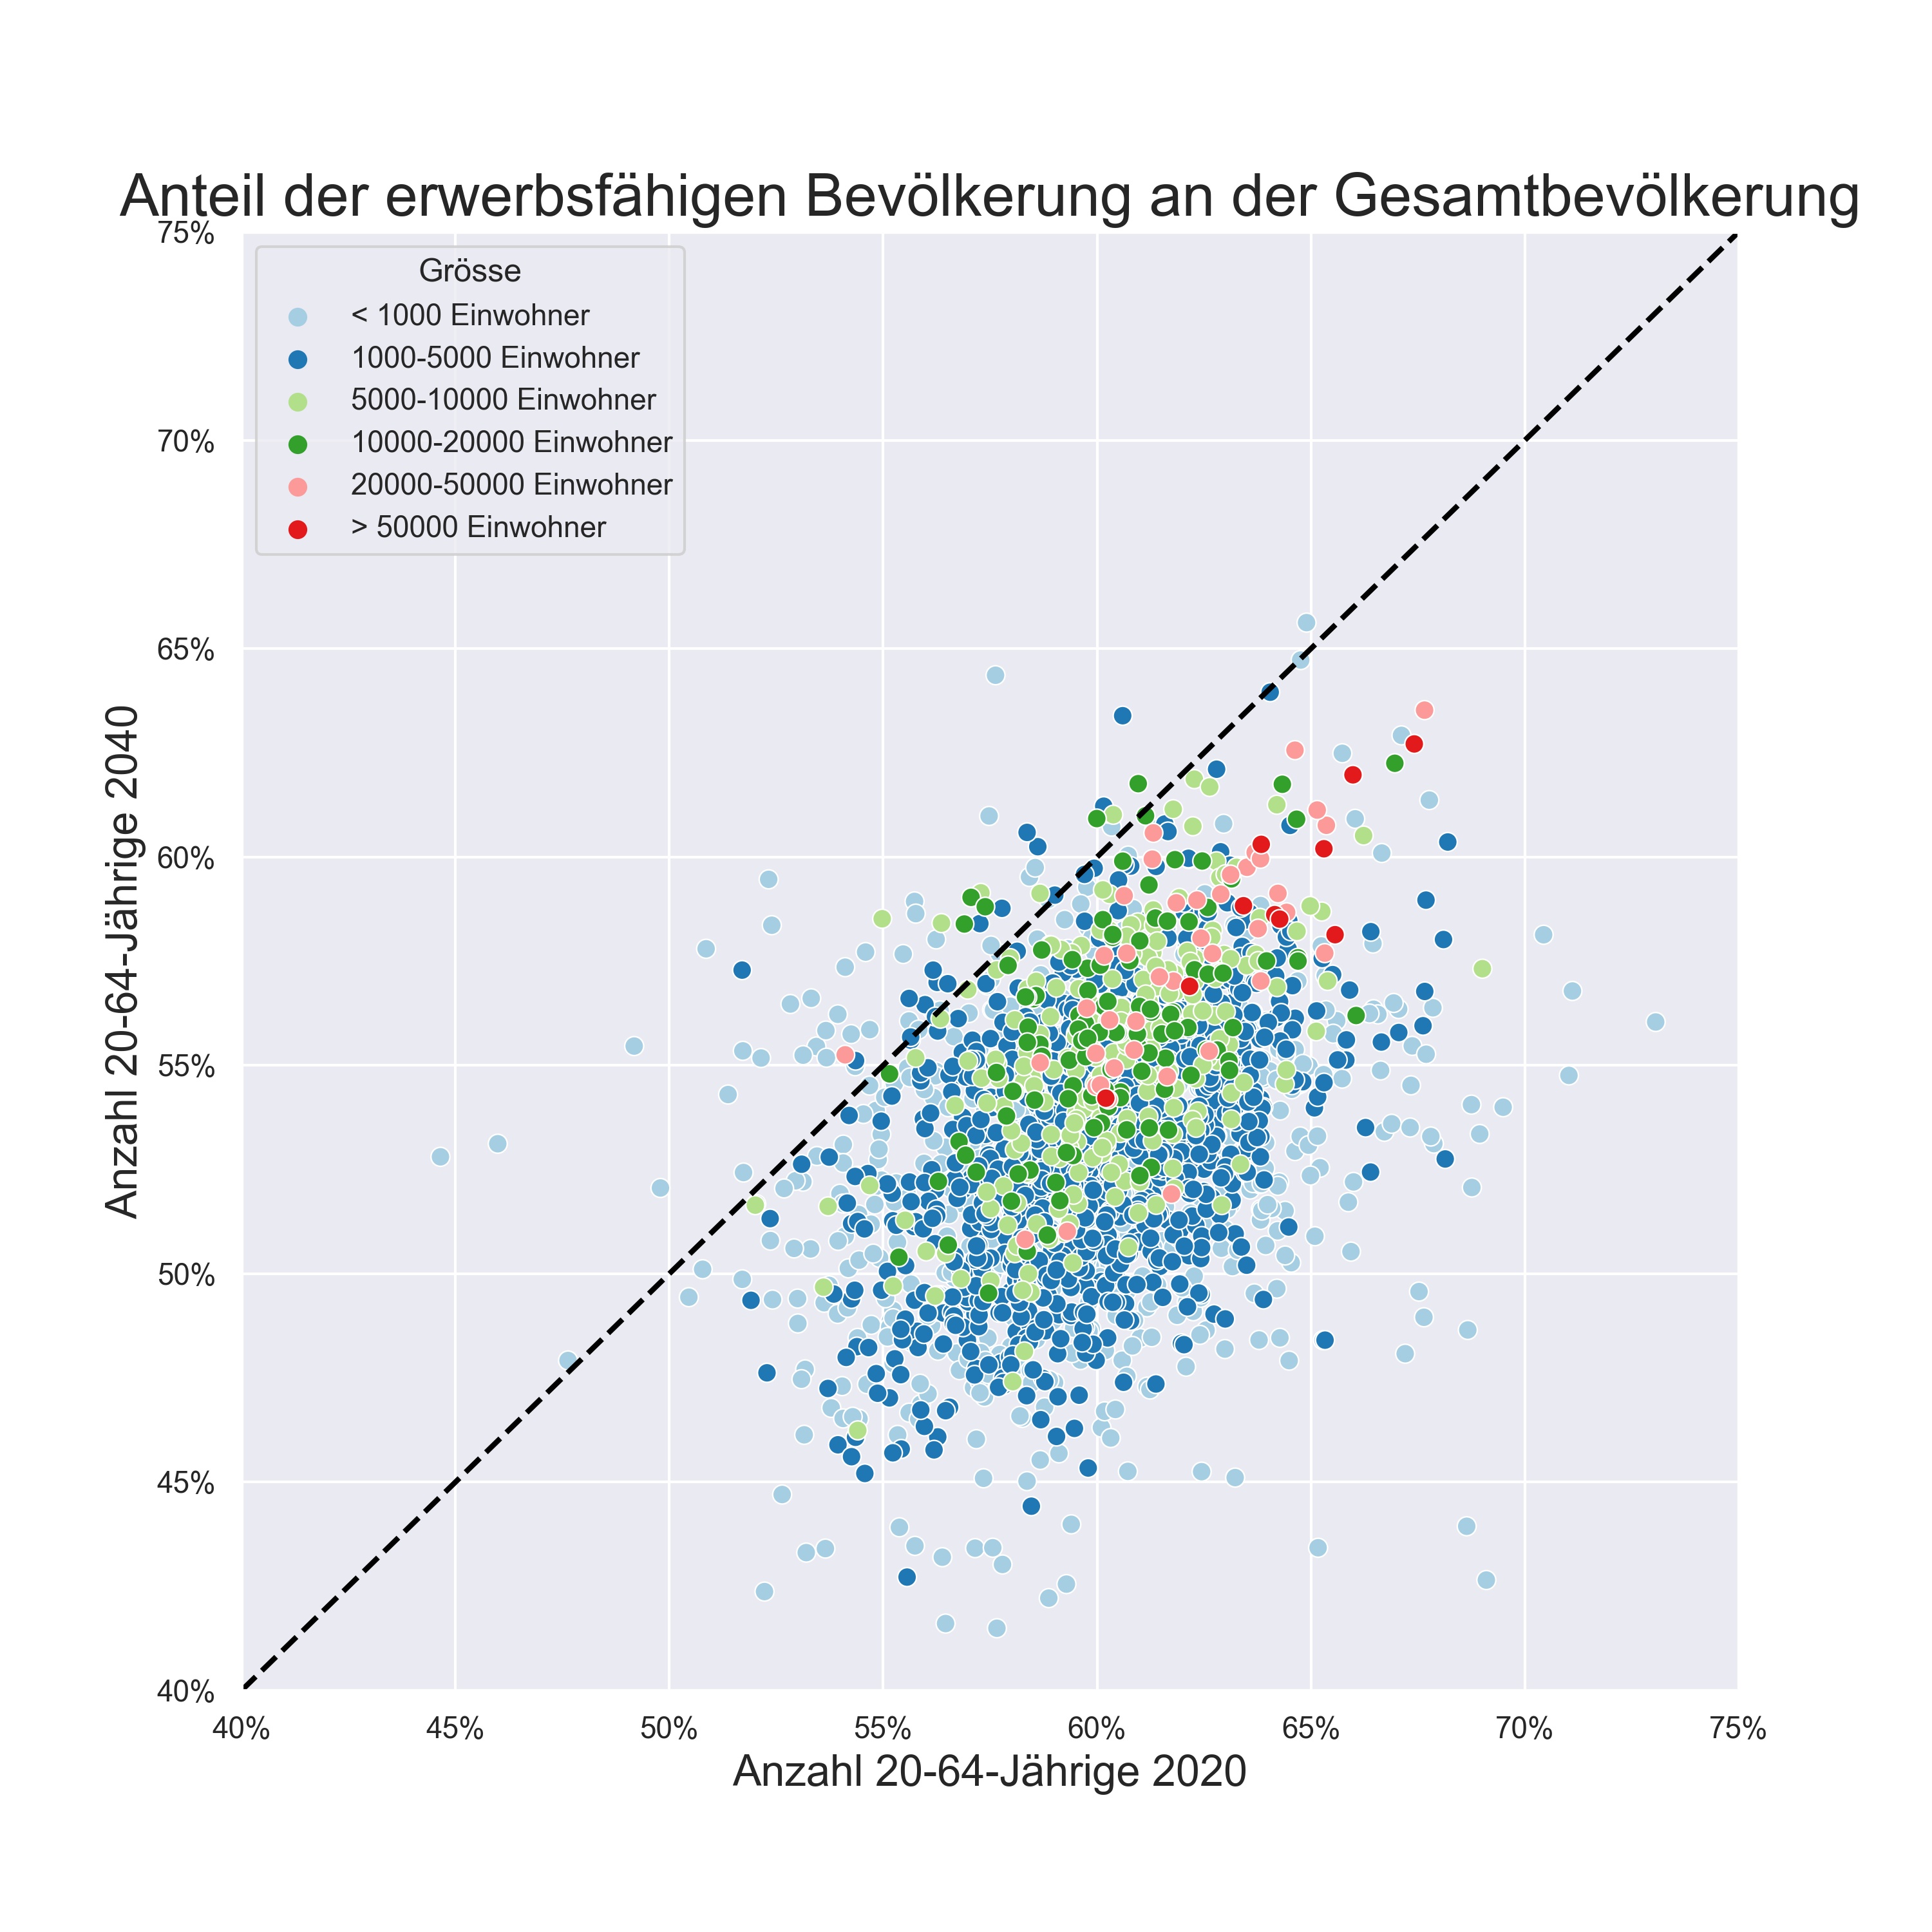 Anteil der erwerbsfähigen Bevölkerung an der Gesamtbevölkerung in allen Schweizer Gemeinden im Jahr 2020 und im Jahr 2040. Quelle: BFS und eigene Berechnungen.